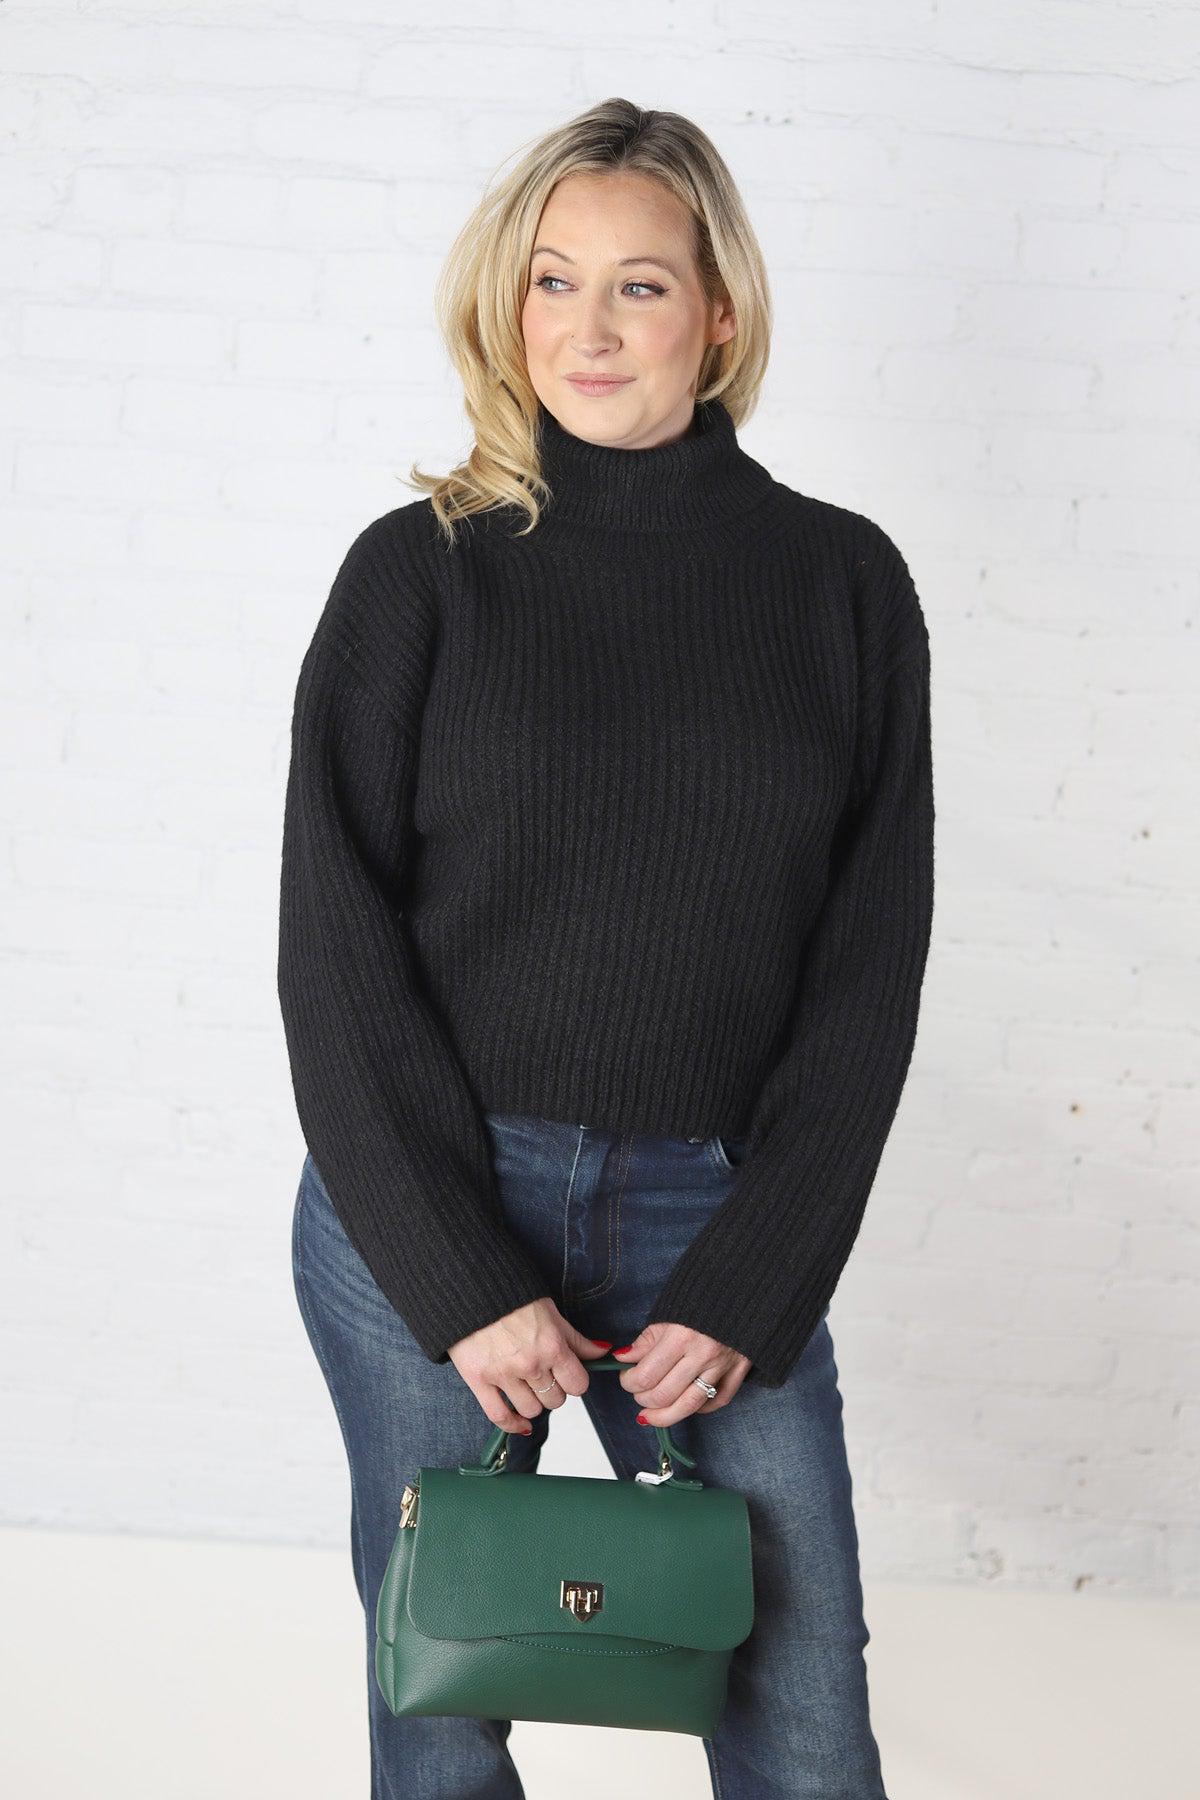 Trina Turtleneck Sweater - Black - Final Sale